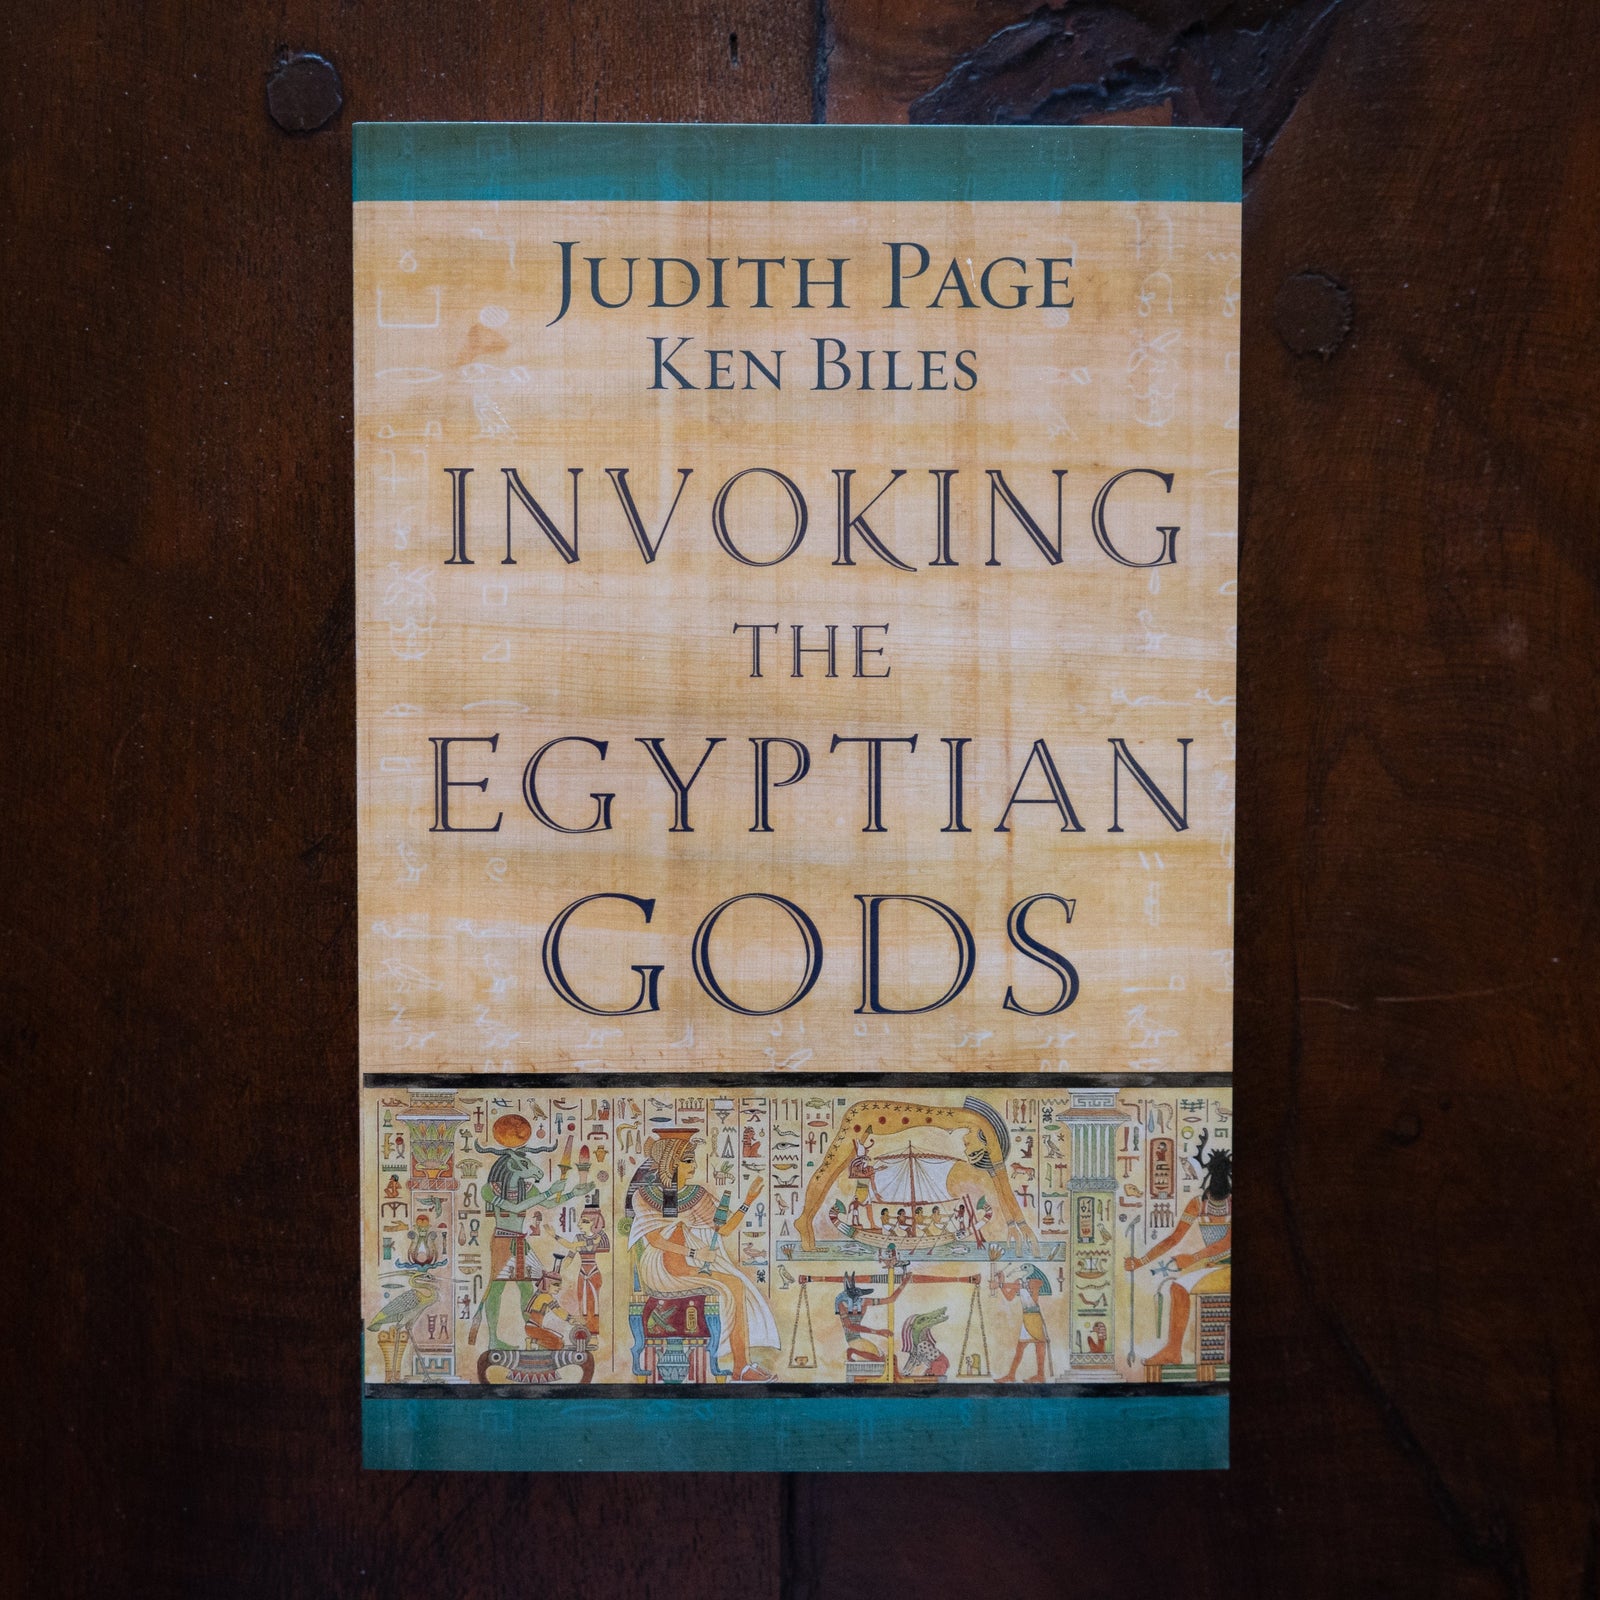 Invoking the Egyptian Gods